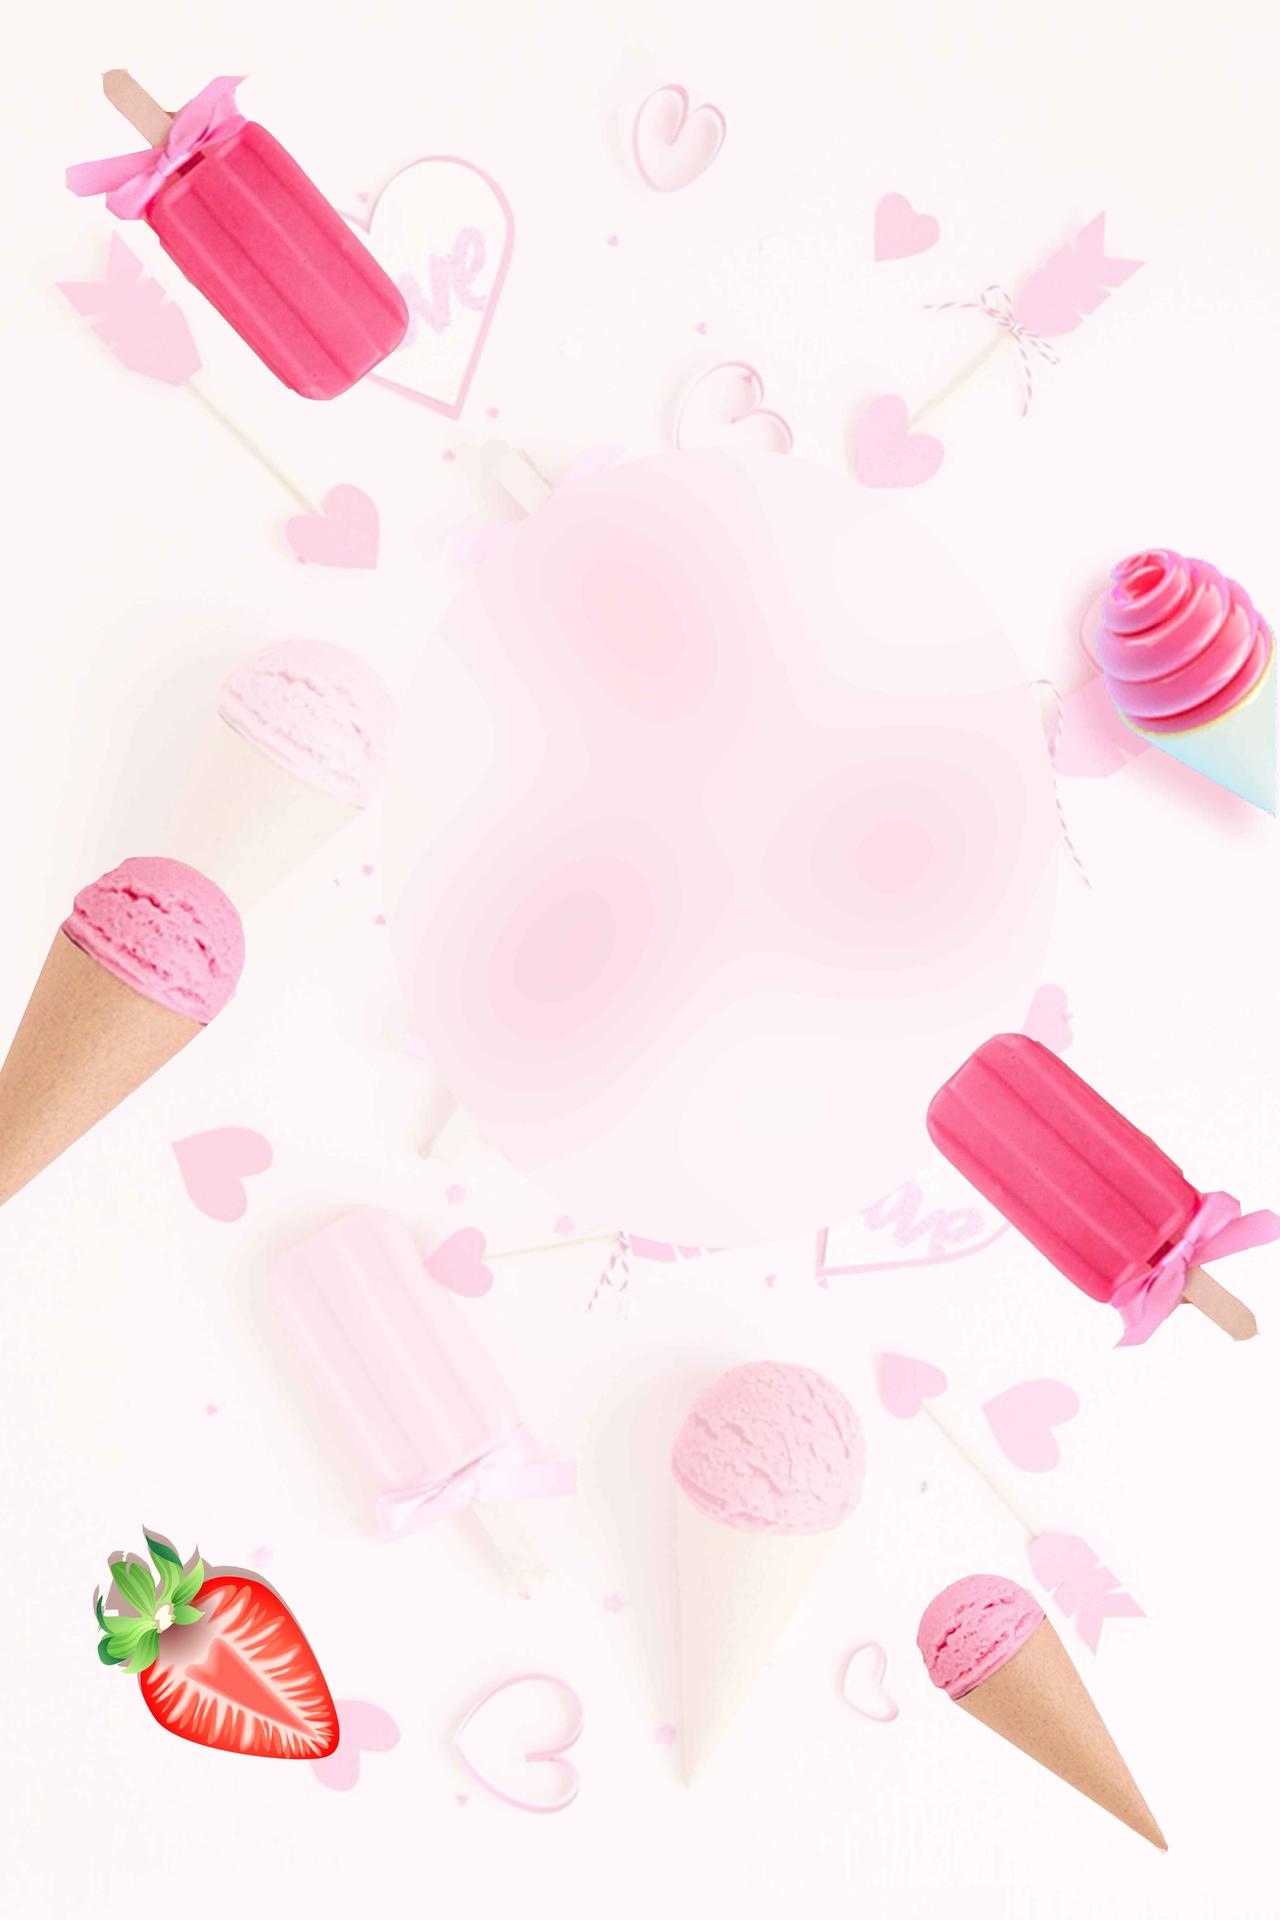 夏天粉红手绘水果美食卡通冰淇淋雪糕促销海报背景展